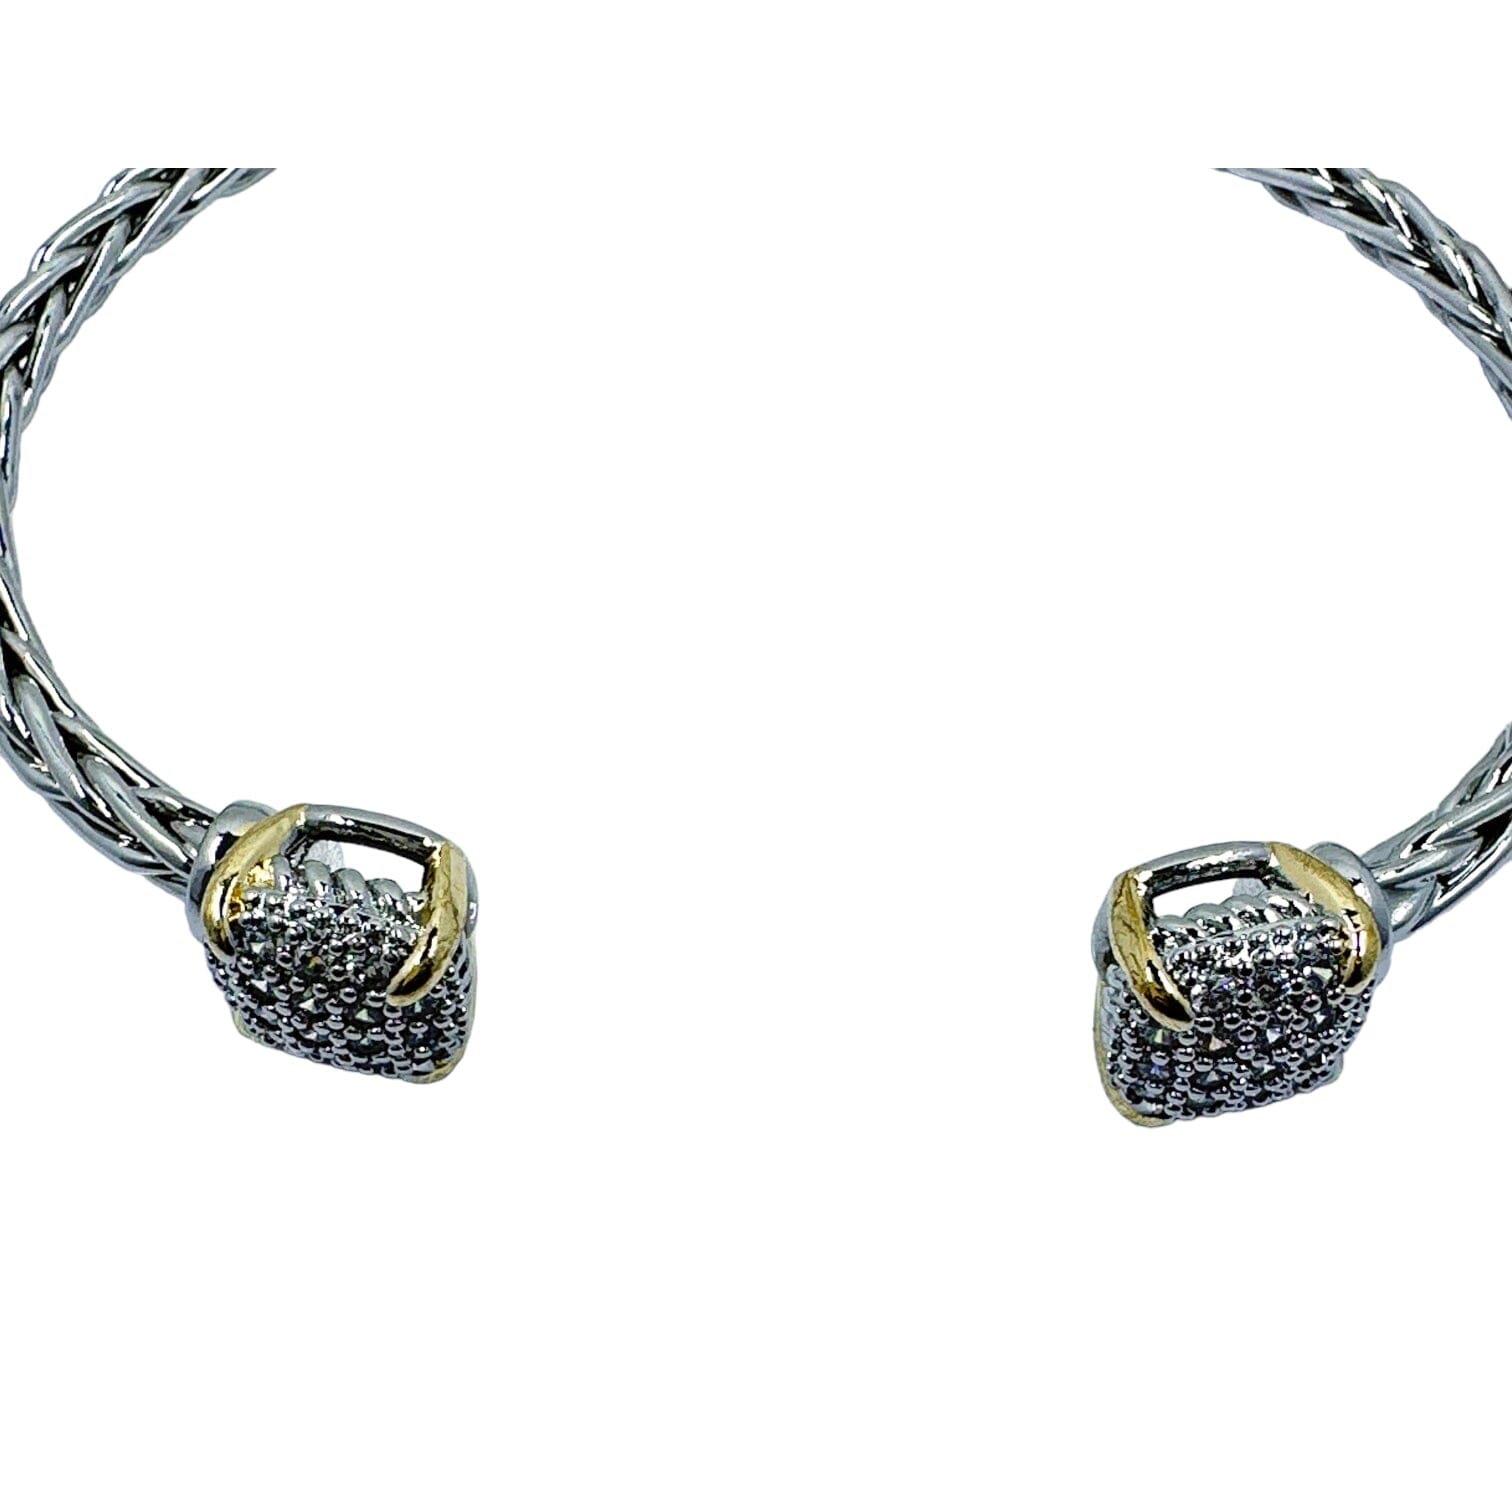 Karen Square Braid Cable Bracelet Bracelets TRENDZIO Silver 